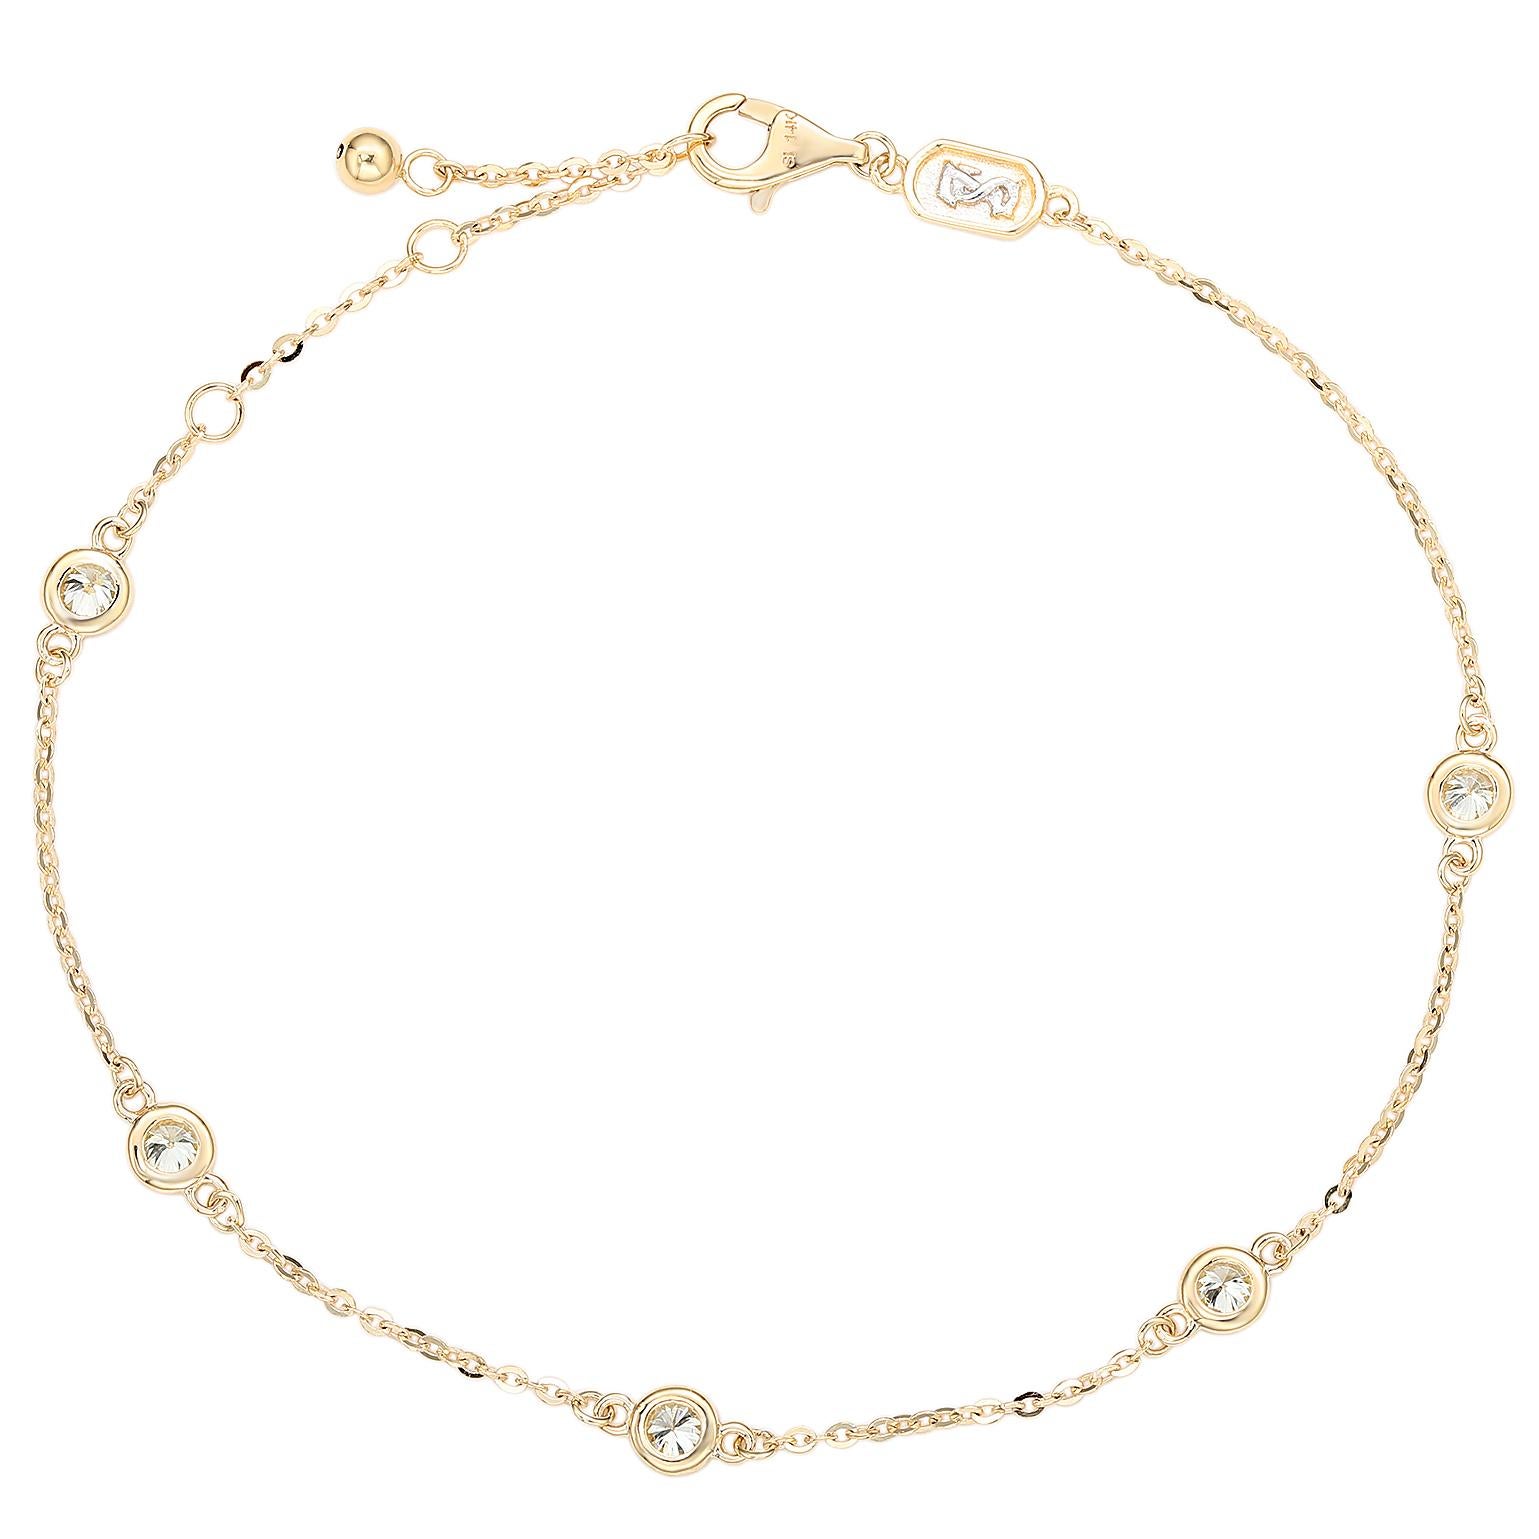 Bringen Sie Ihr Handgelenk zum Funkeln mit diesem wunderschönen Diamantarmband von Suzy Levian. Dieses prächtige Armband ist mit 5 Brillanten im Rundschliff in einer exquisiten Lünette aus 14-karätigem Weißgold geschmückt. Dieses Armband ist